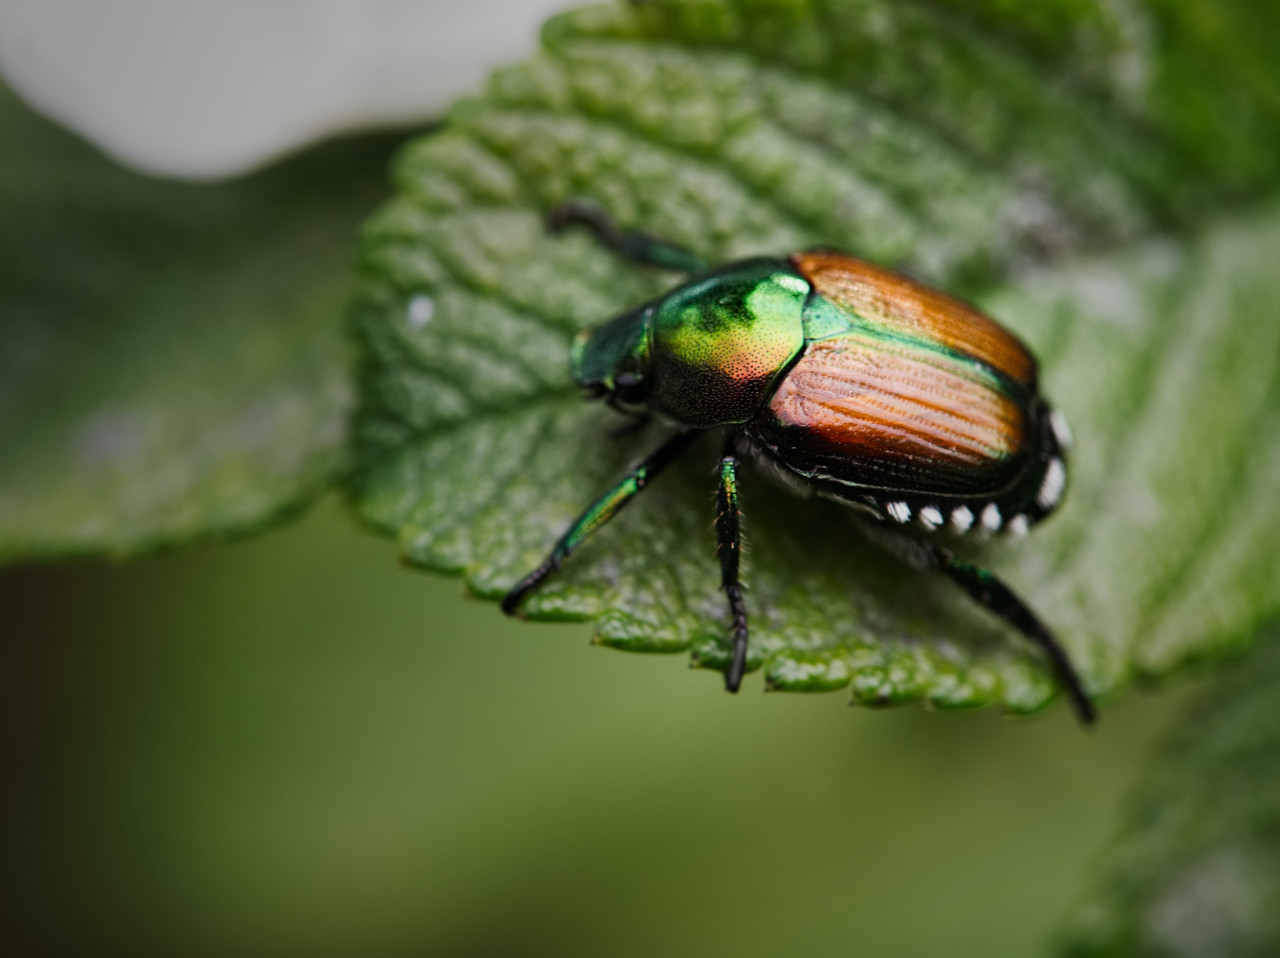 Una especie de escarabajo realiza el trabajo de controlar el crecimiento de estas especies. Unsplash.